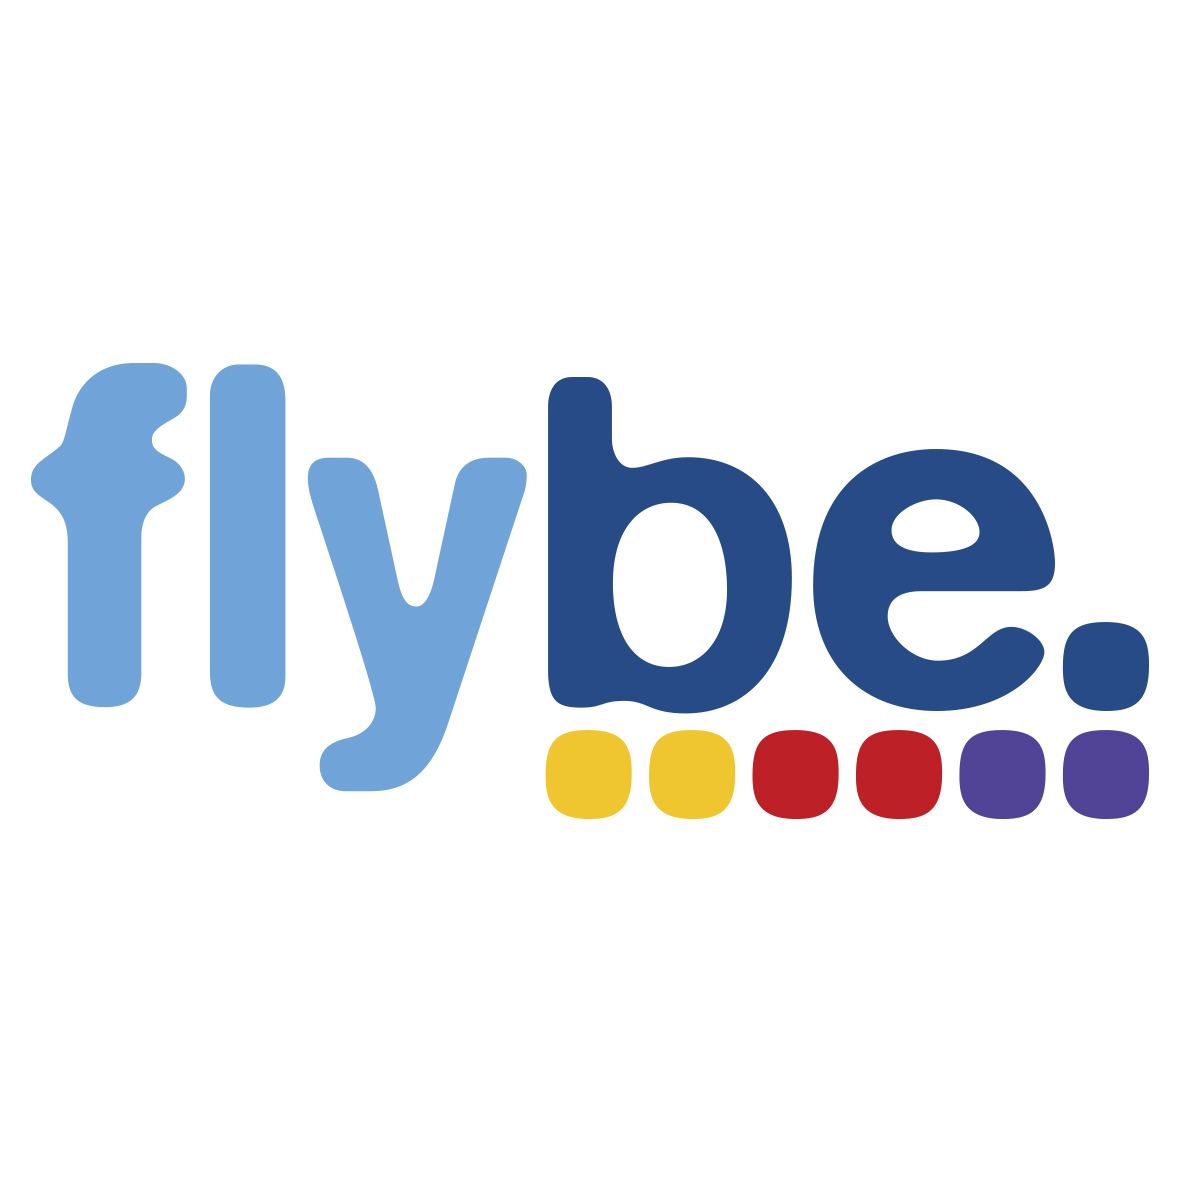 Flybe_logo.jpg